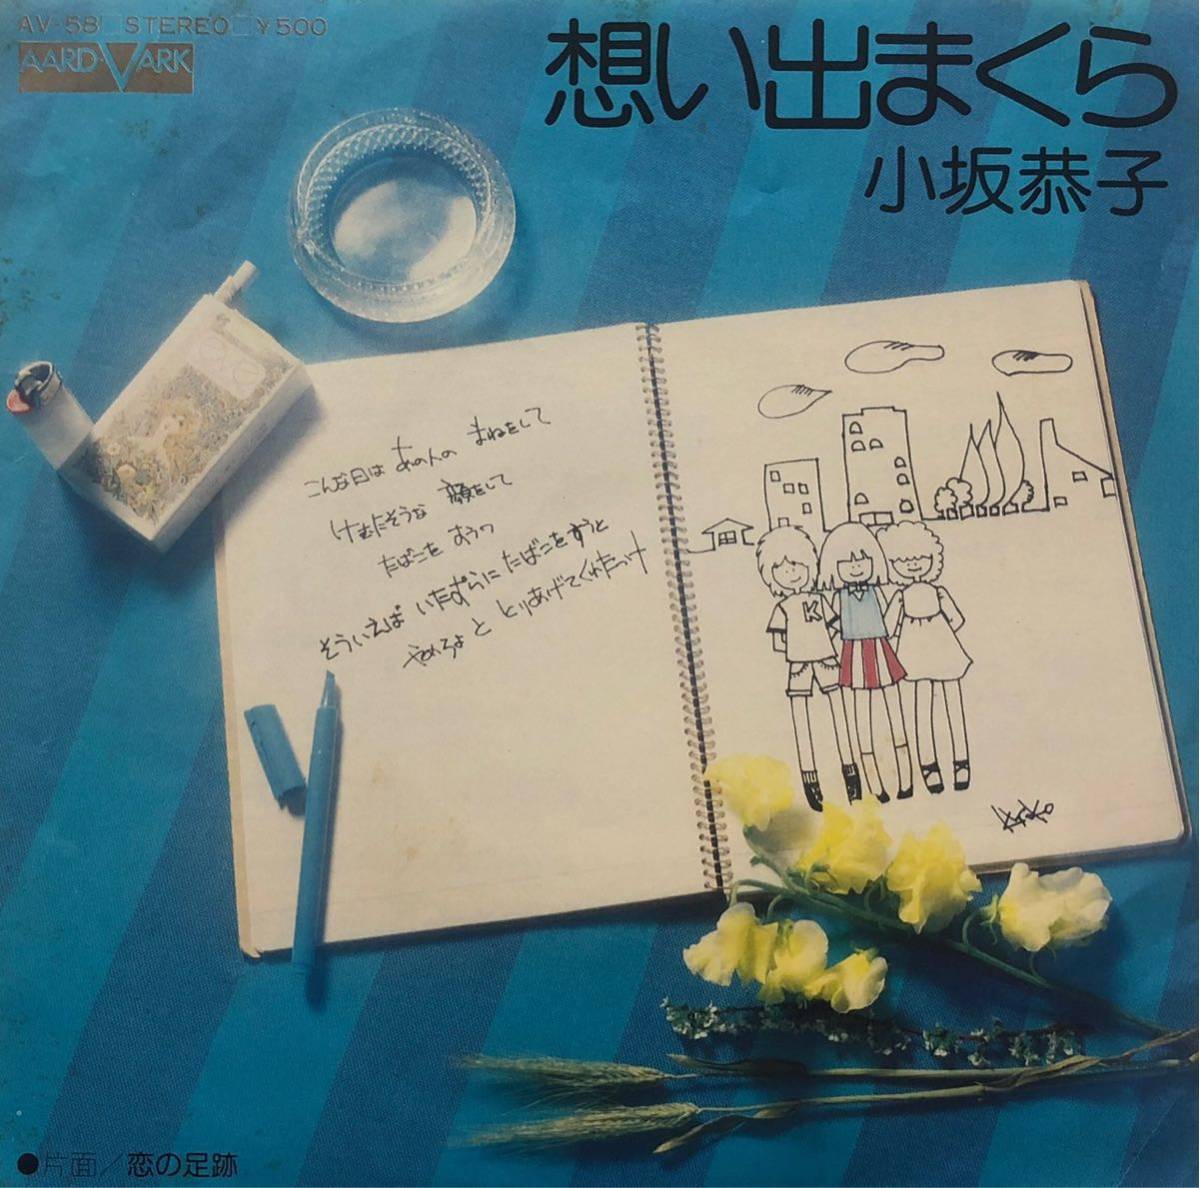 【EP】【7インチレコード】1976年 小坂恭子 / 想い出まくら / 恋の足跡_画像1